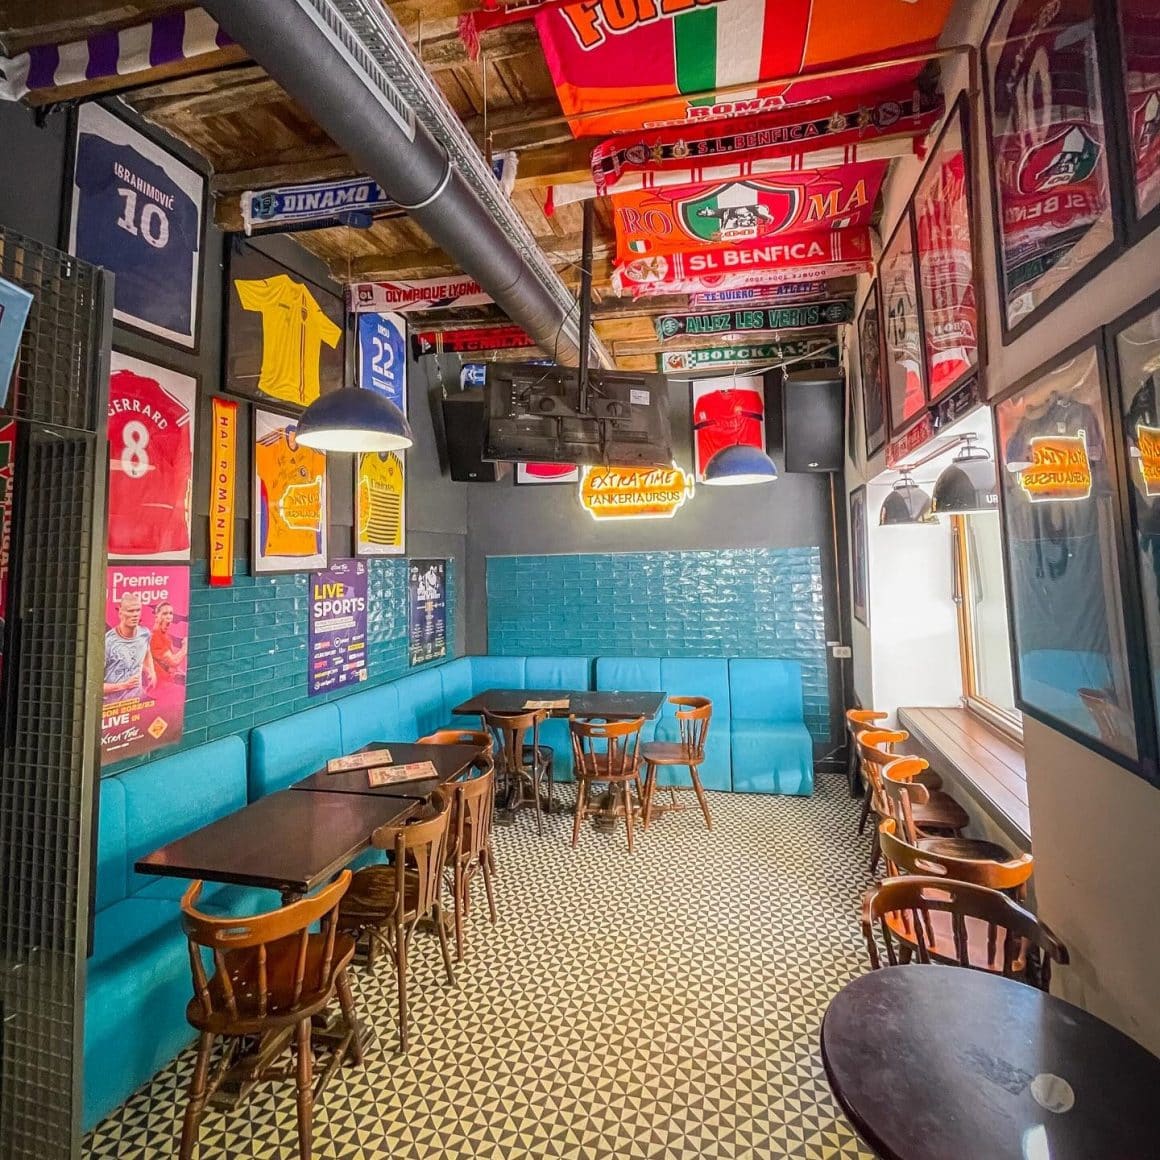 interiorul publui Extra Time din București, decorat colorat, cu multe tablouri cu tricouri sportive pe pereti. Terase și baruri sportive București